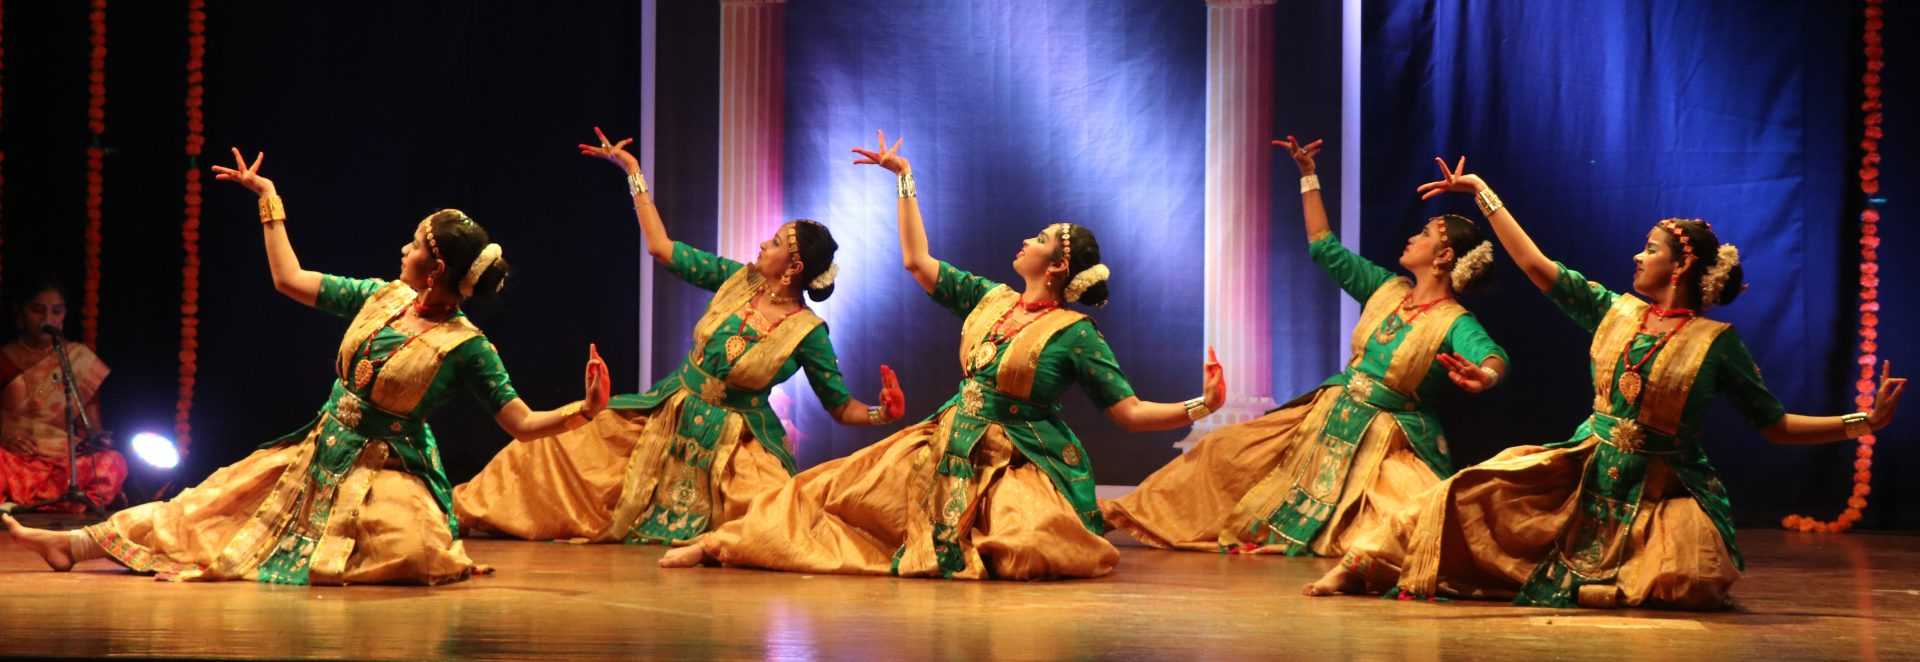 भारतातील प्रमुख नृत्यशैलींचा एकत्रित रंगमंचीय नृत्याविष्कार;दीक्षा प्रवाह कार्यक्रमात सादरीकरण 